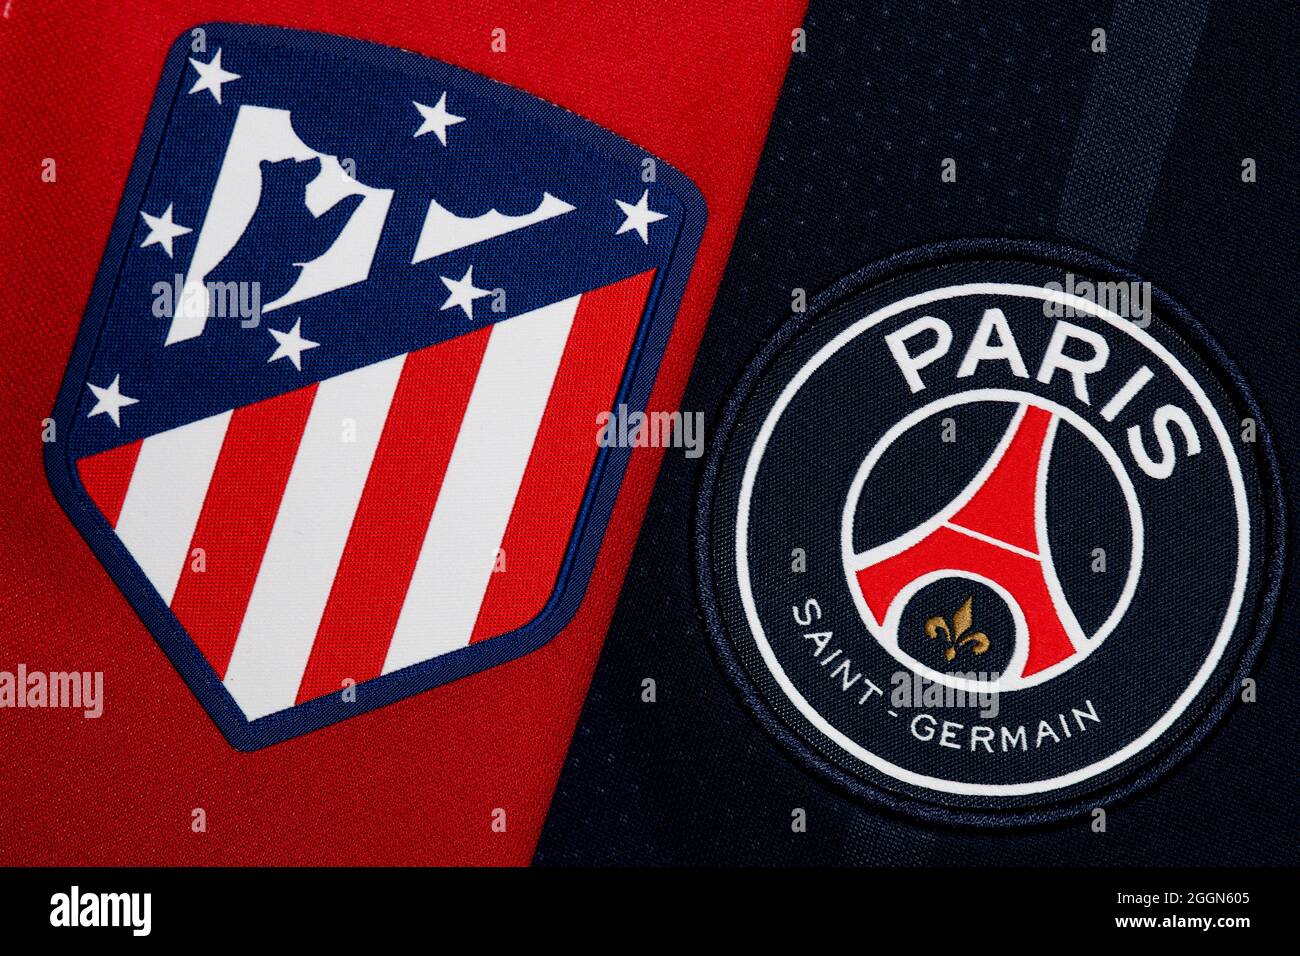 Nahaufnahme des Wappen von Atletico Madrid und PSG Club. Stockfoto